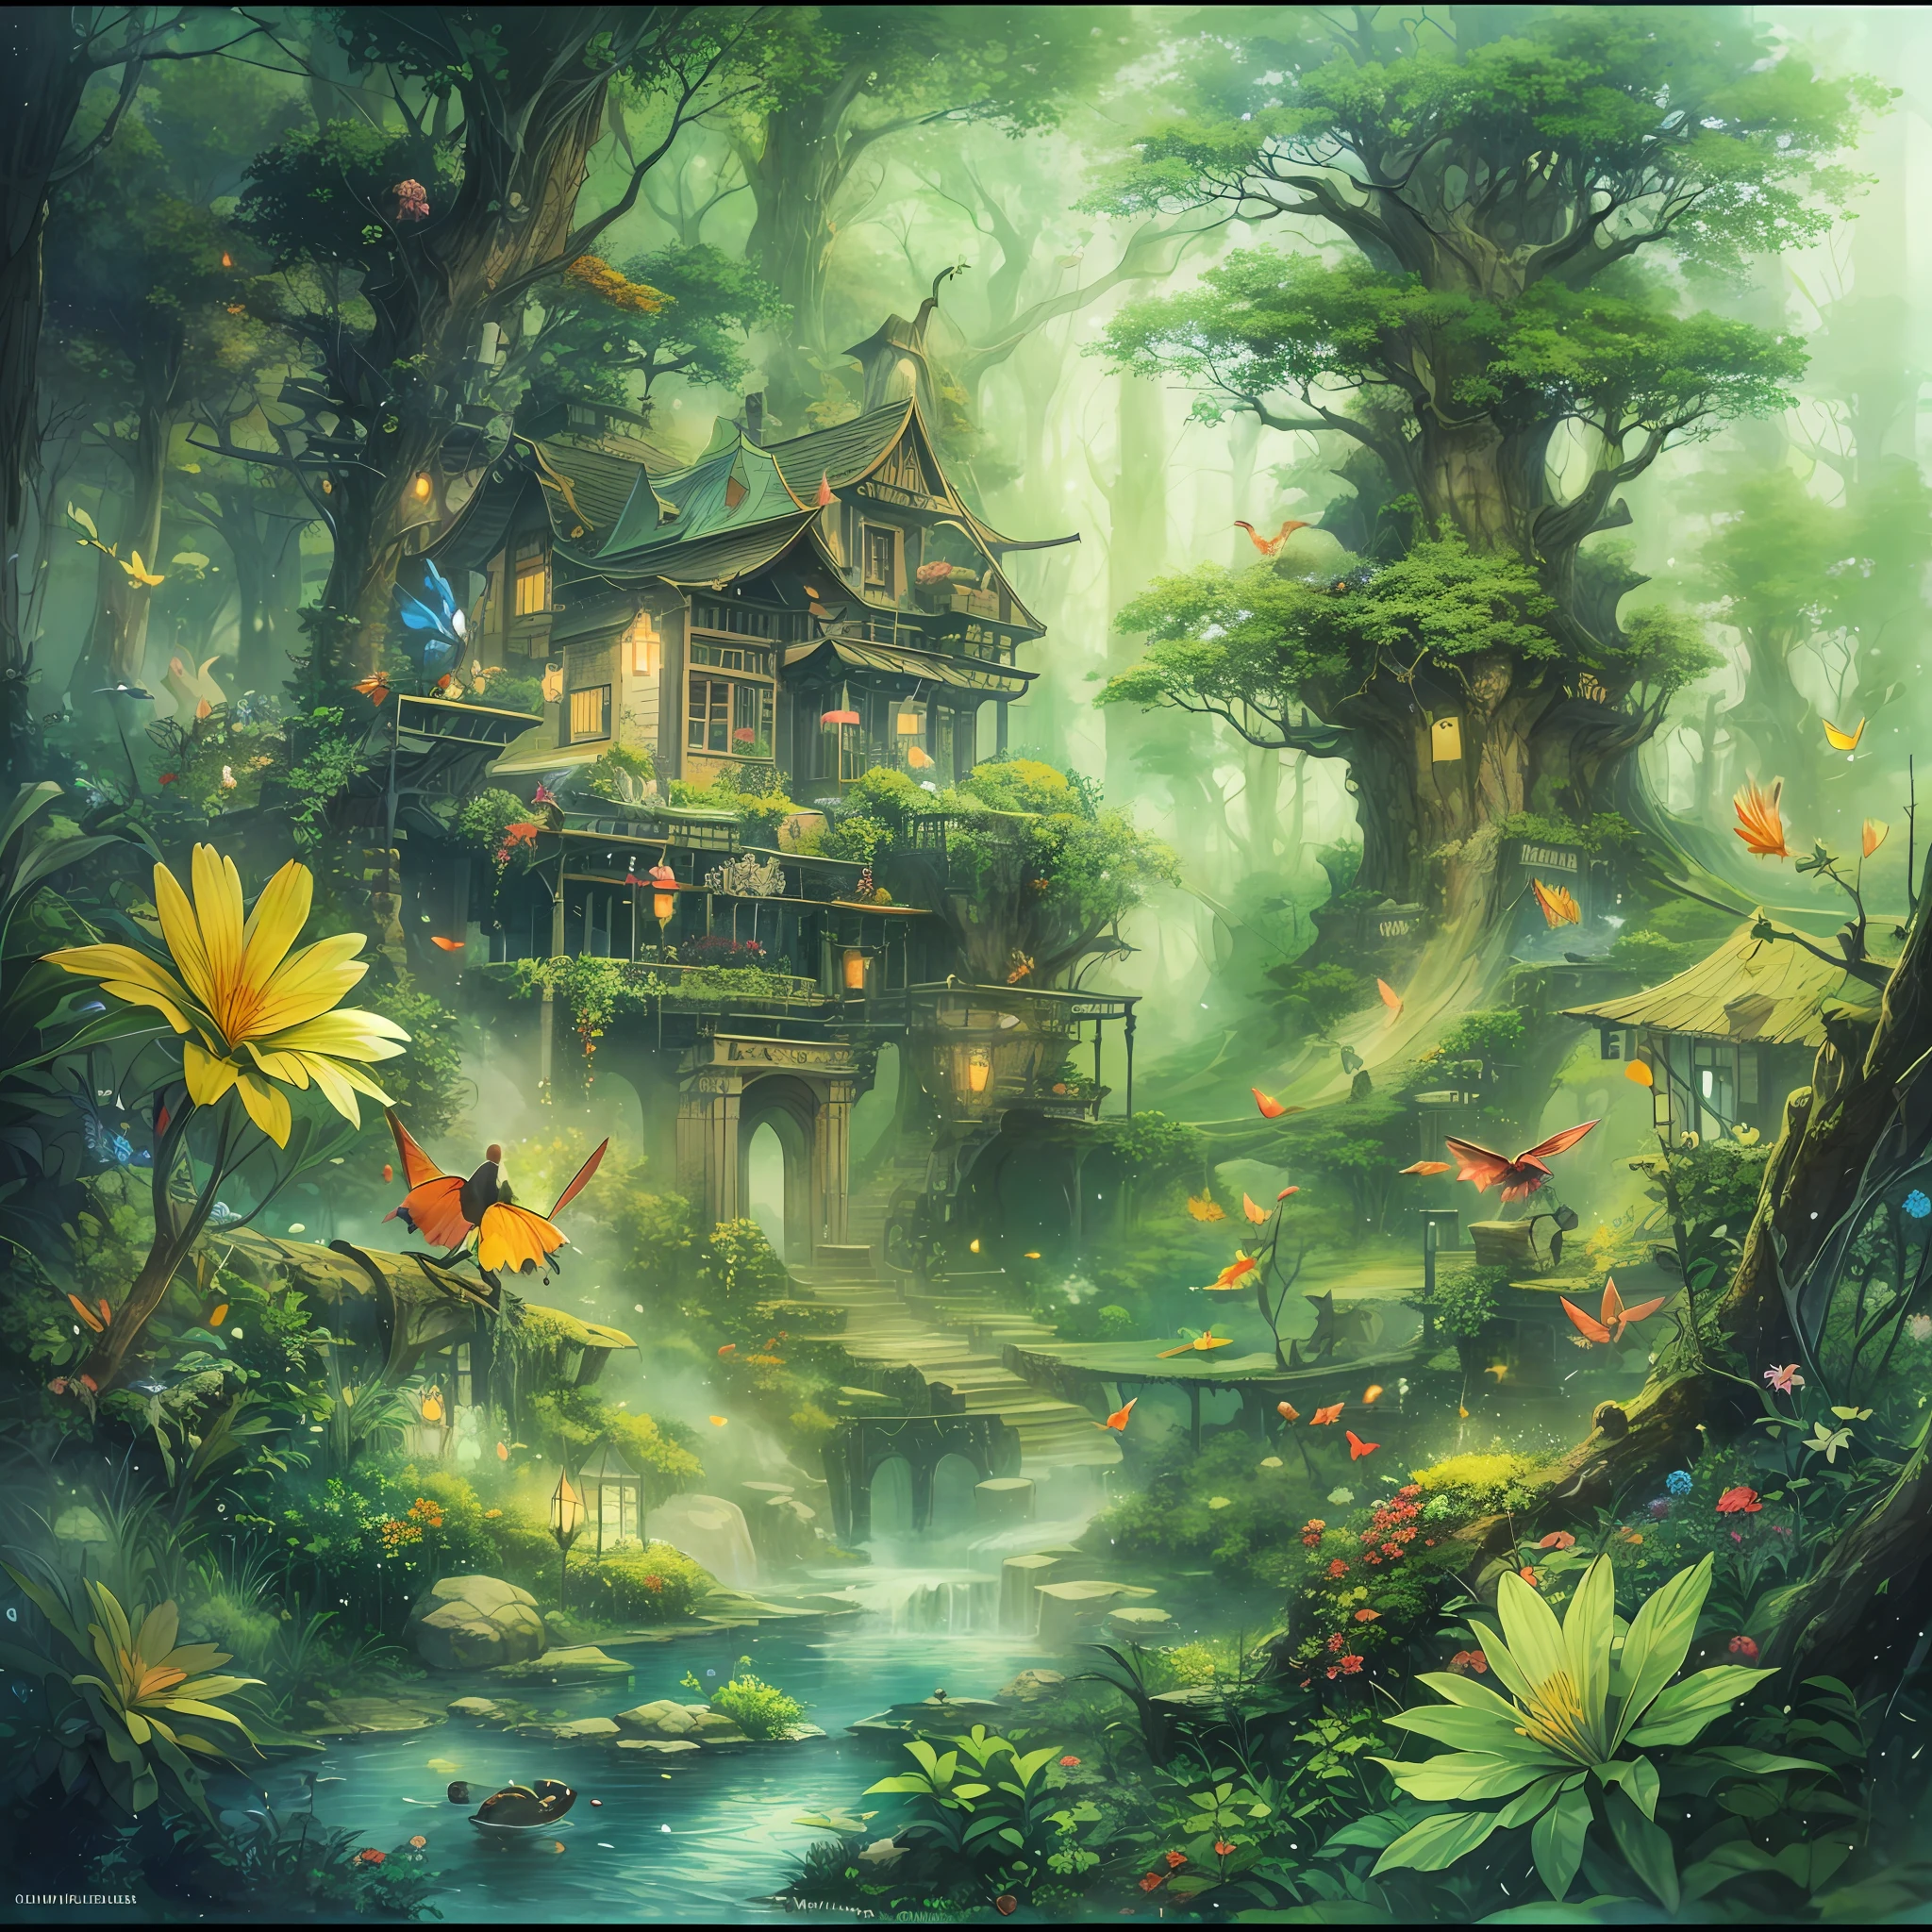 シュケゾーマ，（啓発：1.1），（最高品質），（傑作：1.1），（パノラマレンズ：1.3），高解像度，（インクの飛散），（色の飛沫），（水彩）魔法の森：魔法の森を作る、小さな妖精、そびえ立つ木々がある、大きな花の形をした魔女の家、鮮やかな葉と輝く小川、気まぐれな生き物と幻想的な光と影，魅惑的な雰囲気。